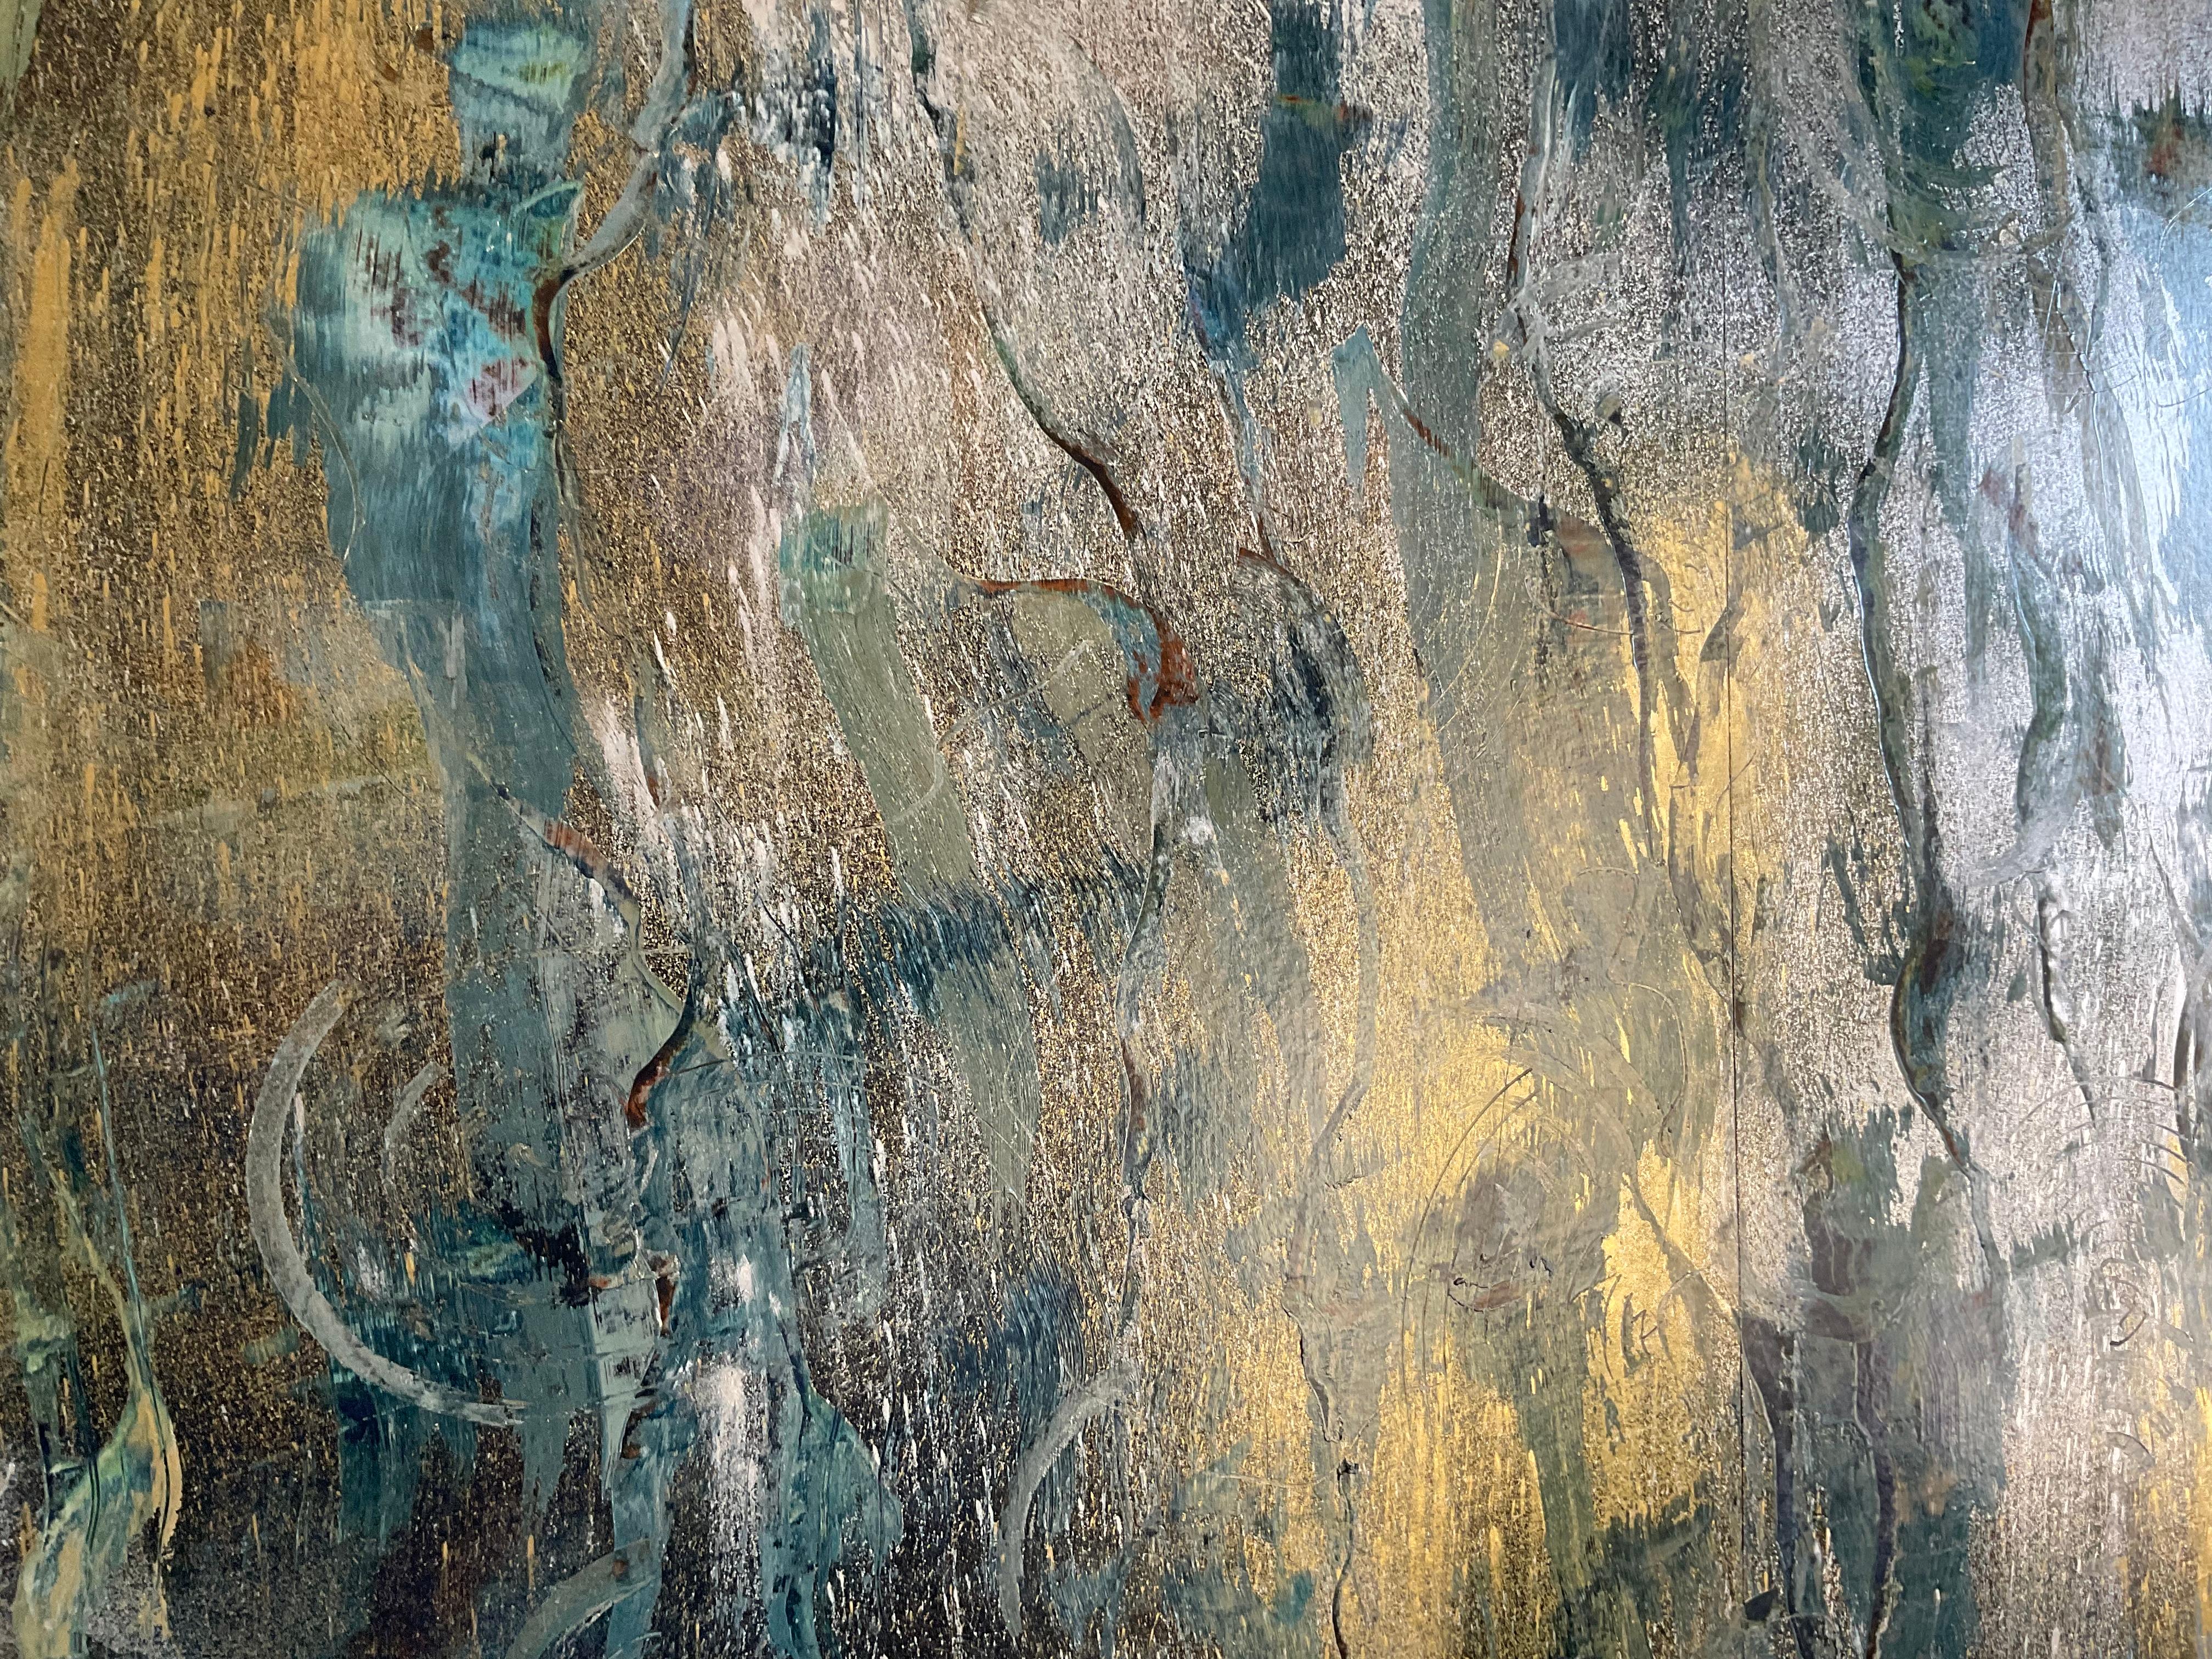 Peinture abstraite gestuelle sur papier avec des accents de bleu, de gris foncé et de sarcelle sous des poudres métalliques argentées et dorées.
